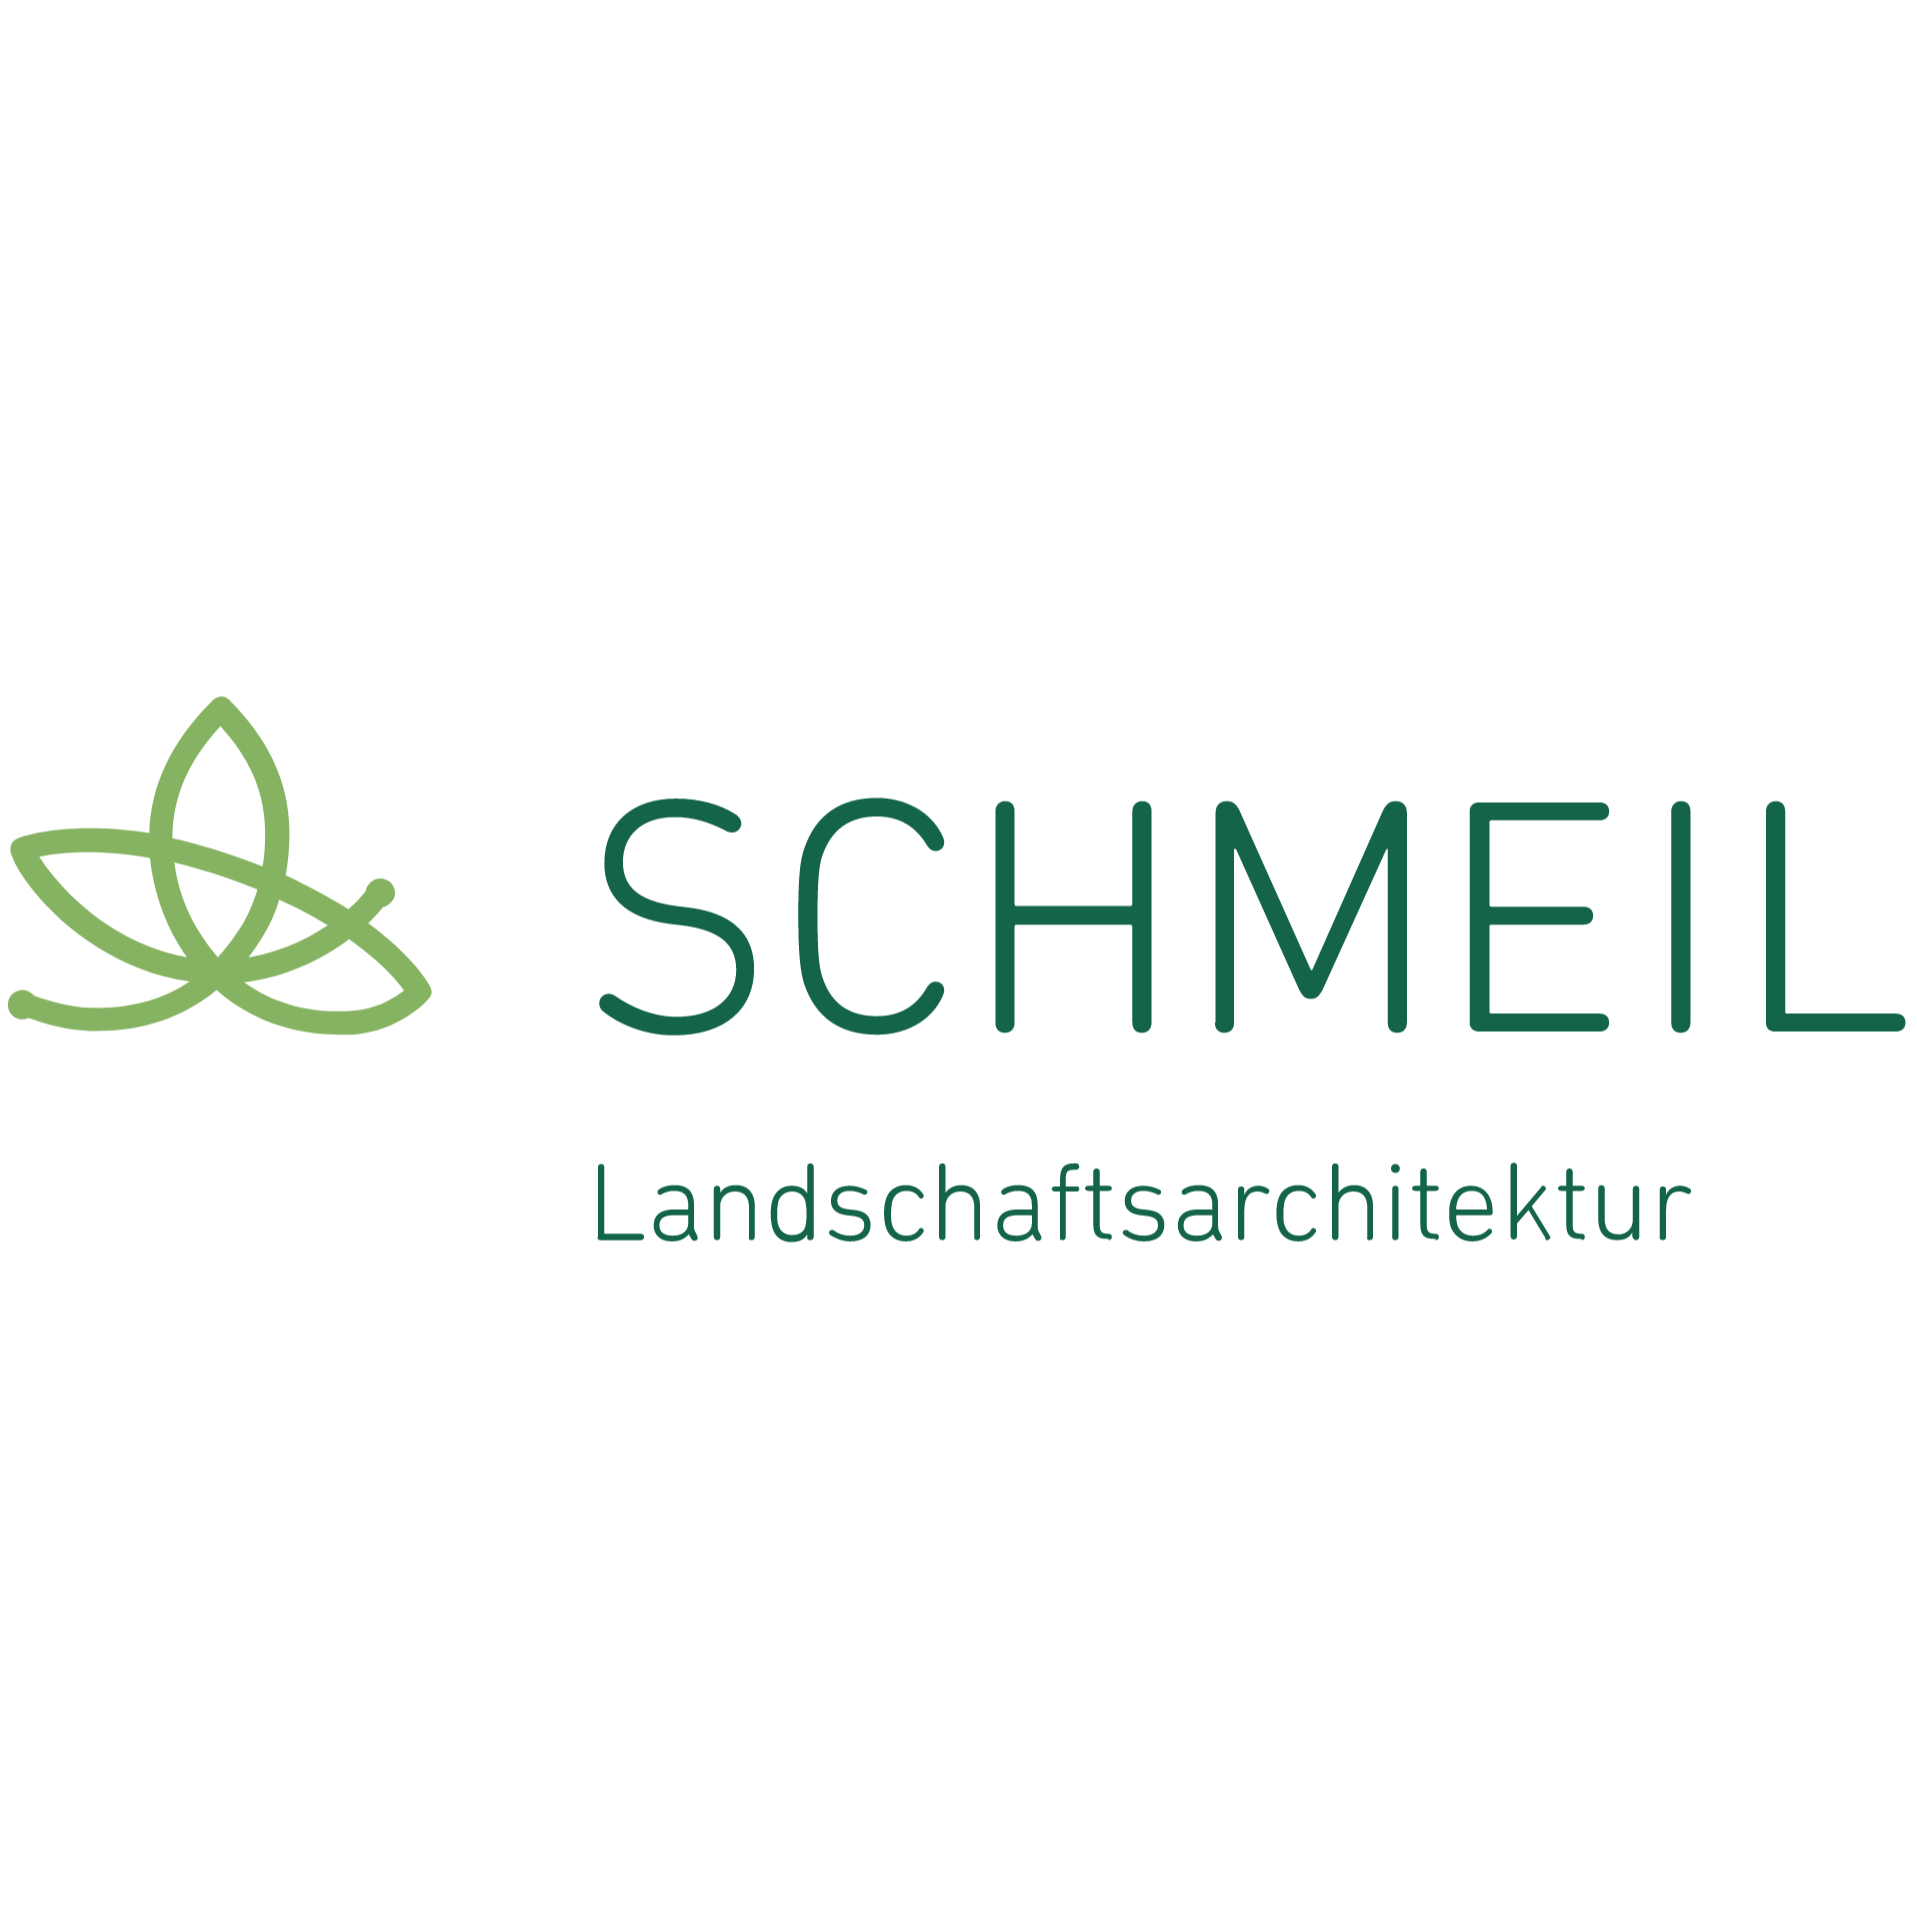 Schmeil Landschaftsarchitektur in Halle (Saale) - Logo